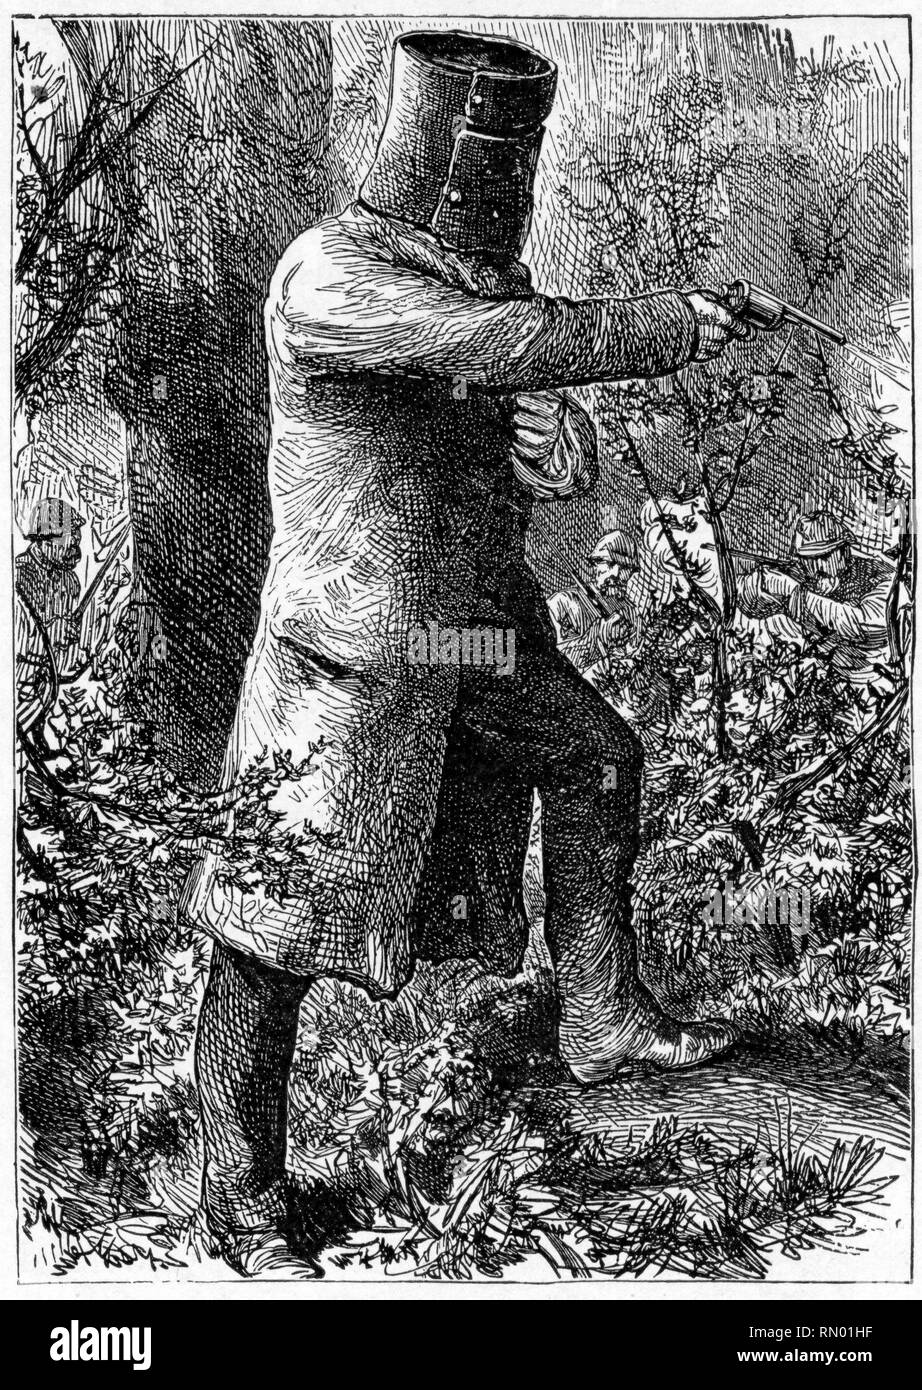 The Bush Ranger, Ned Kelly, in 1880. Edward "Ned" Kelly (1854-1880), Australian  bushranger, outlaw, gang